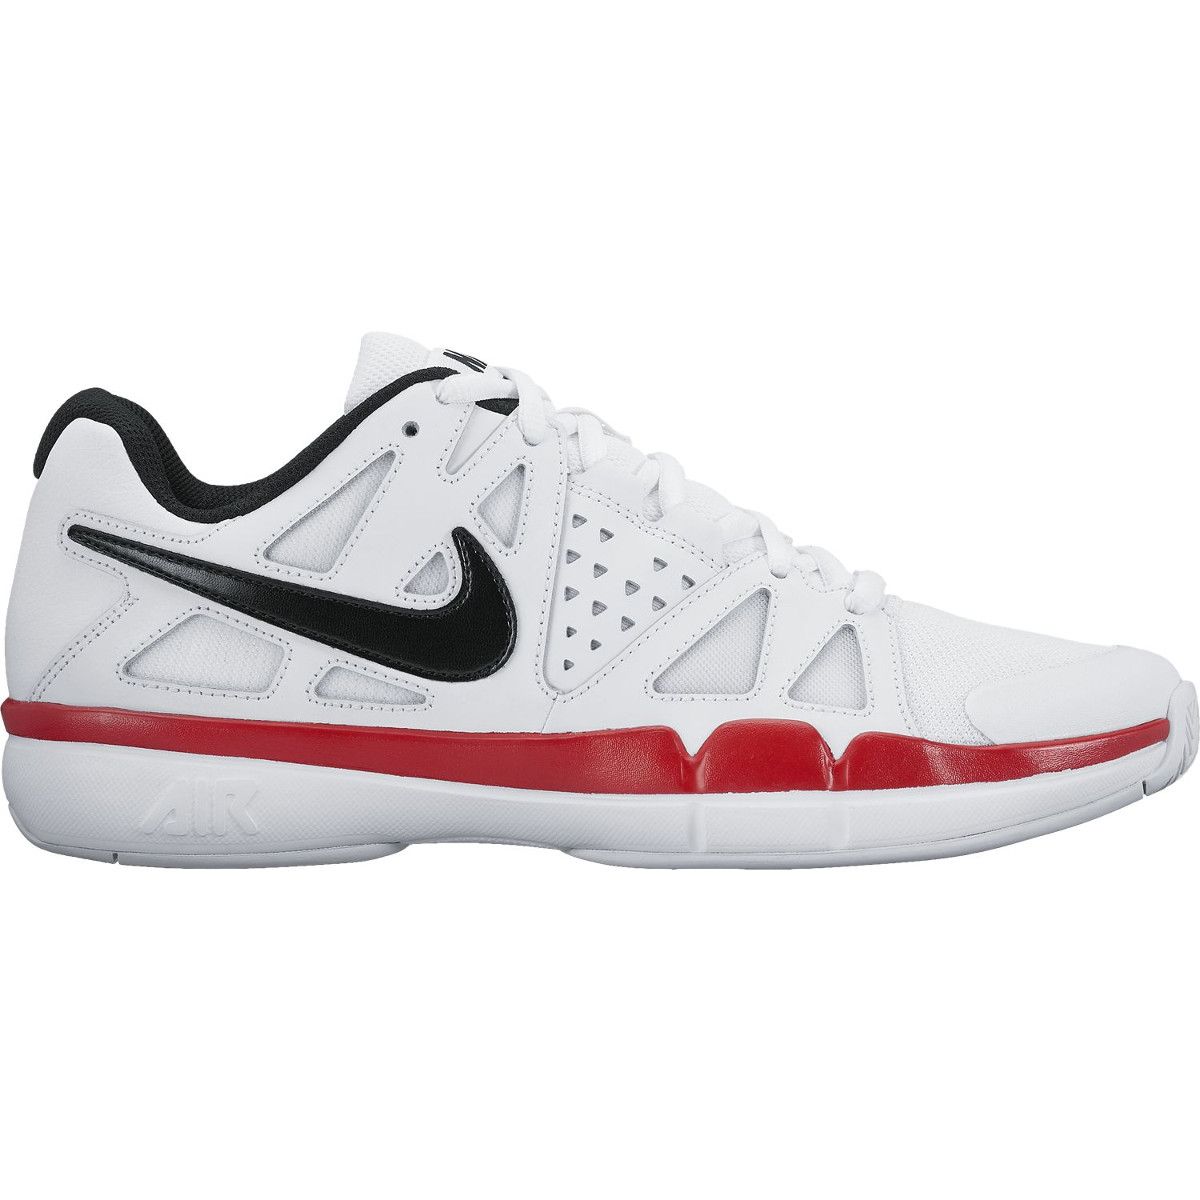 Nike Air Vapor Advantage Men's Tennis Shoes 599359-116